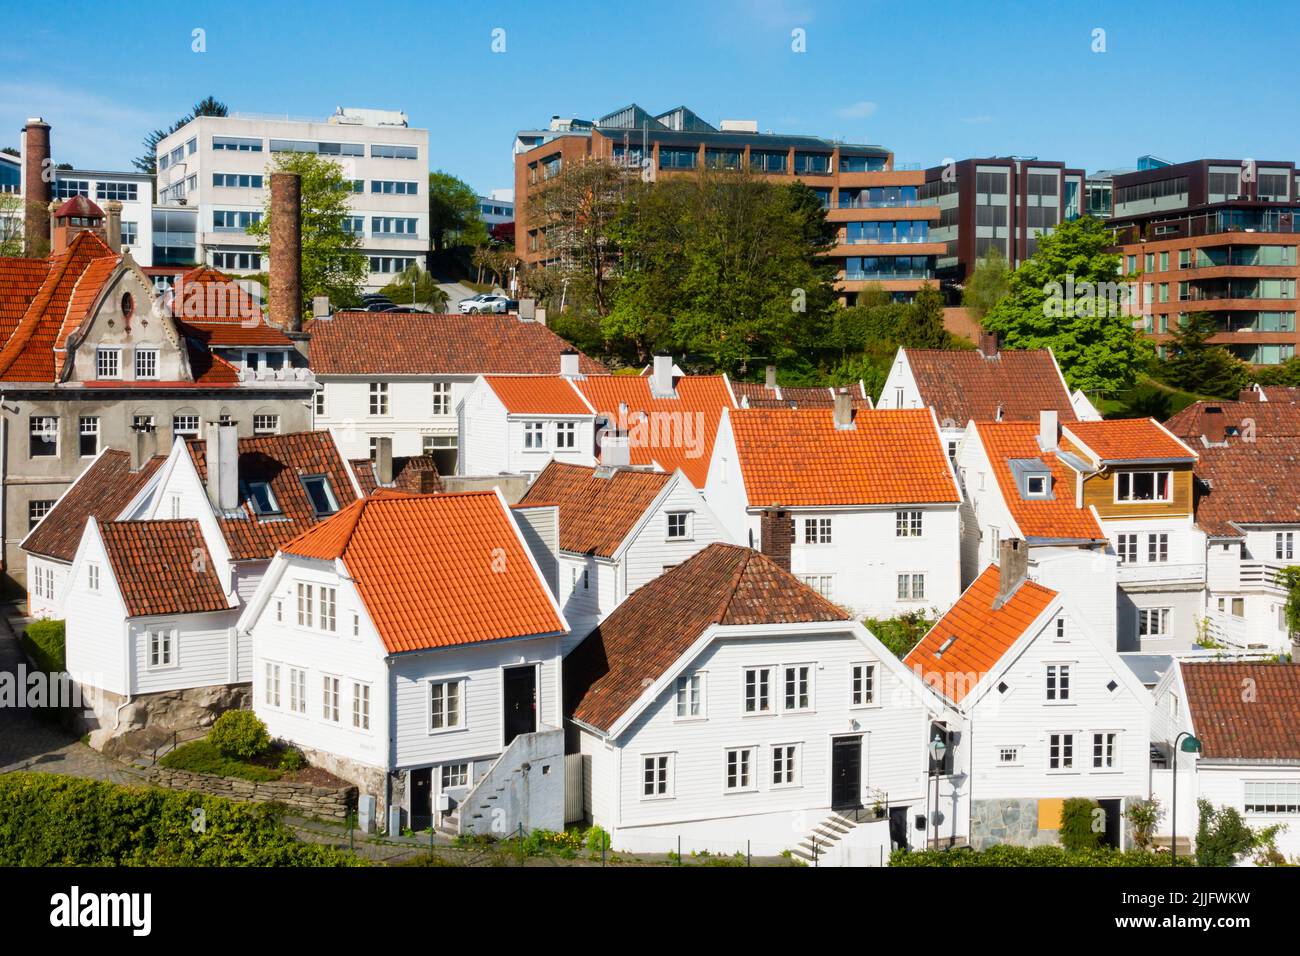 Maisons traditionnelles en bois peintes en blanc norvégien à Stavanger, Norvège Banque D'Images